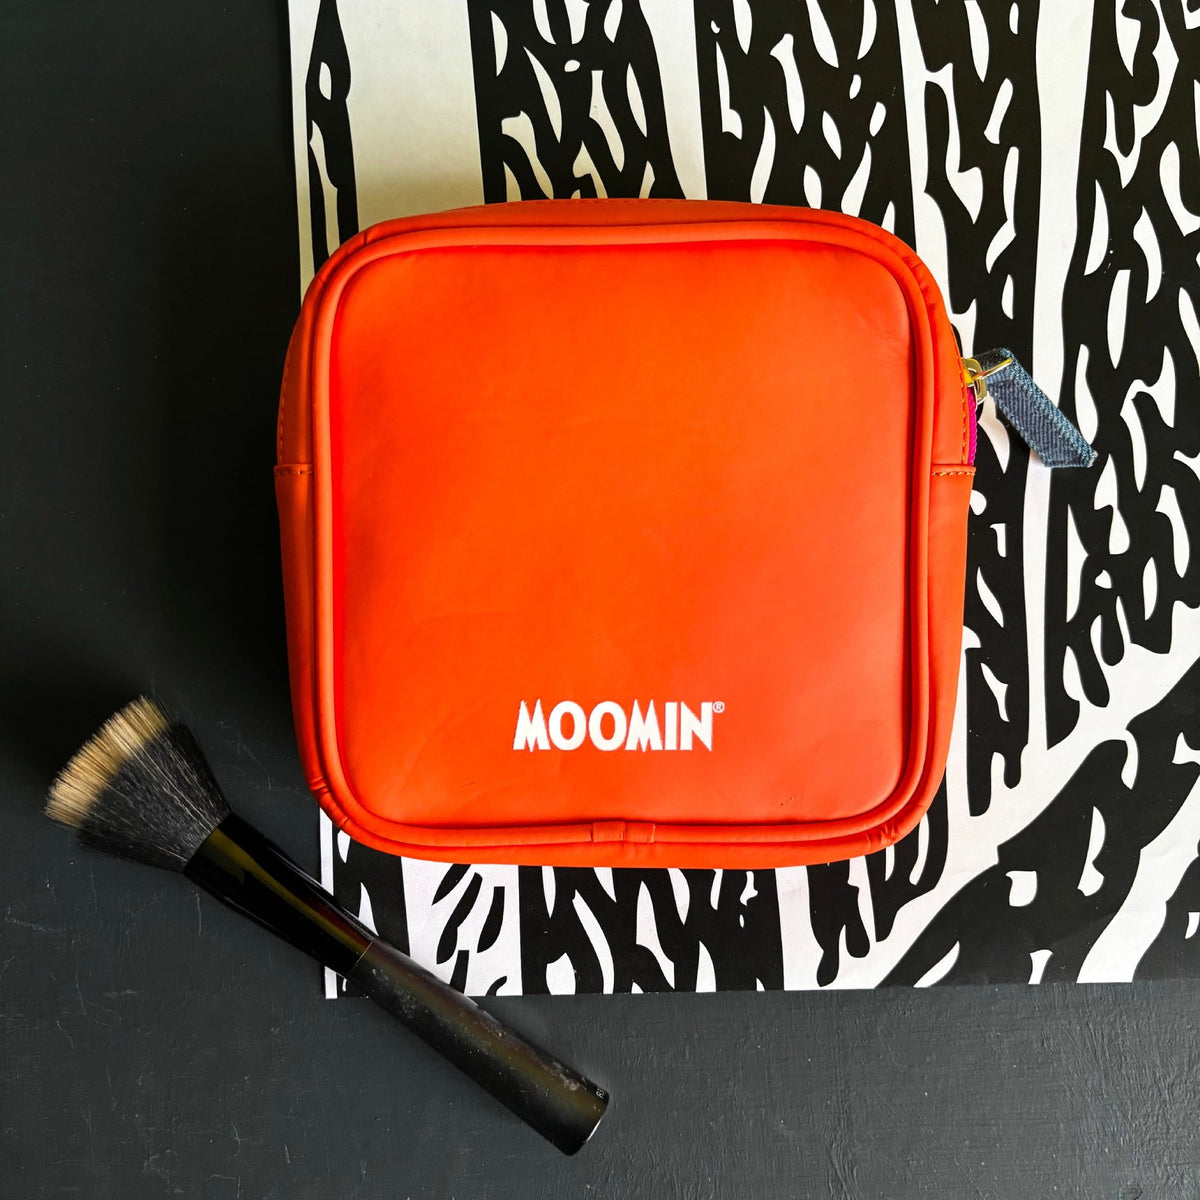 Moomin Makeup Bag Excellent Idea